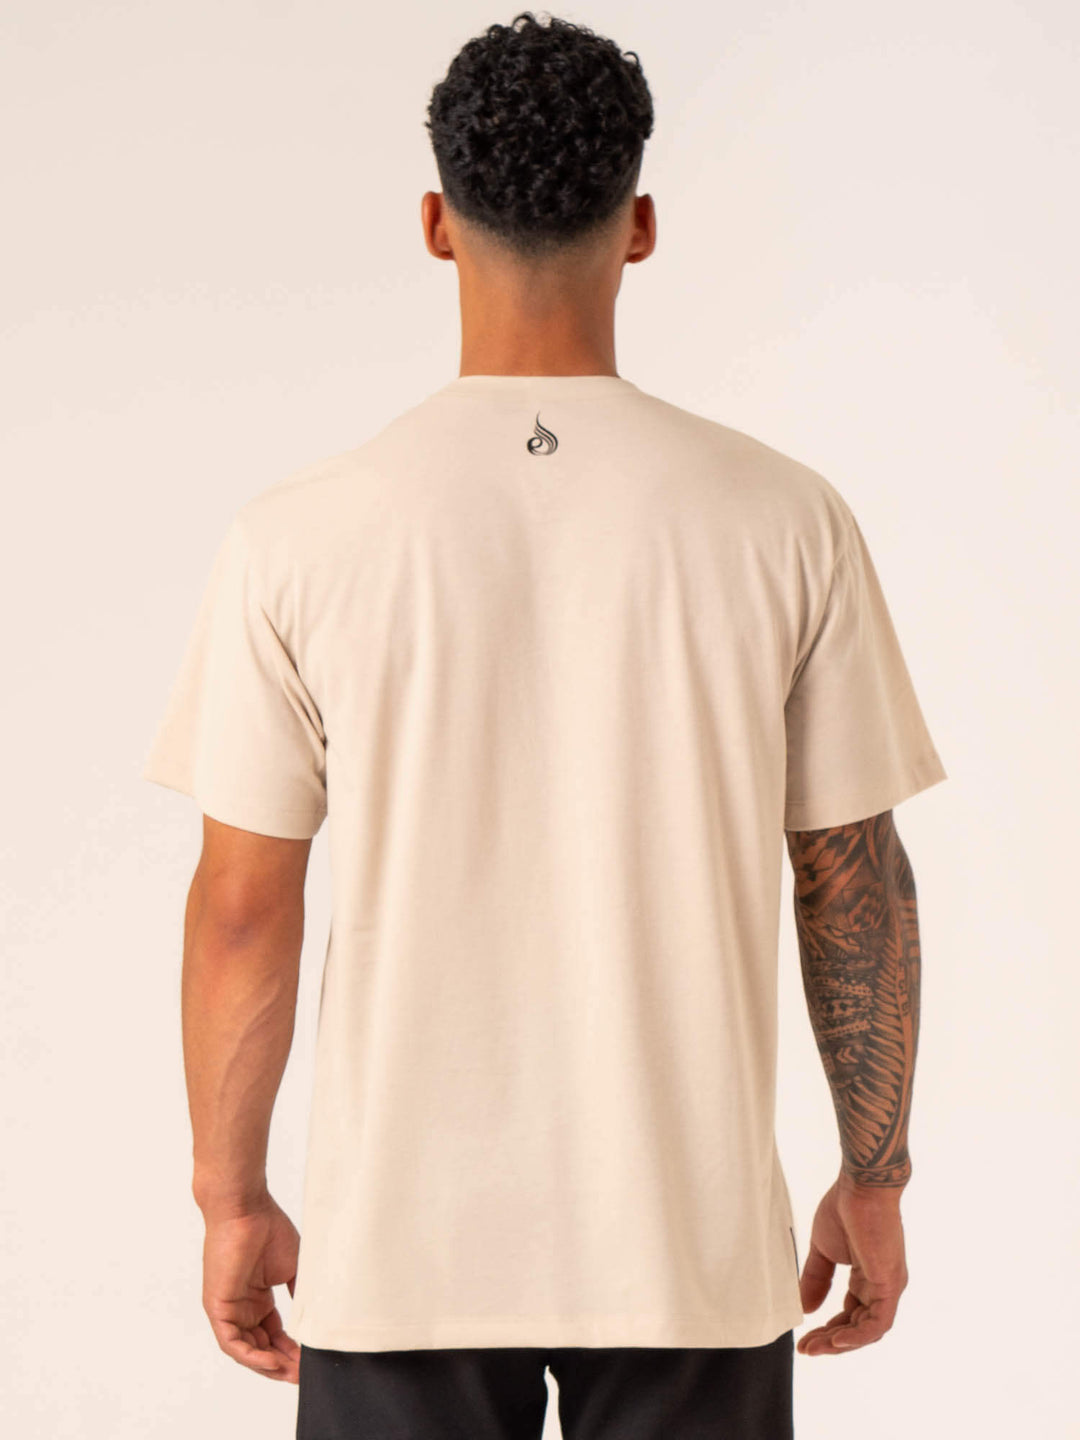 Emerge Oversized T-Shirt - Sand Clothing Ryderwear 